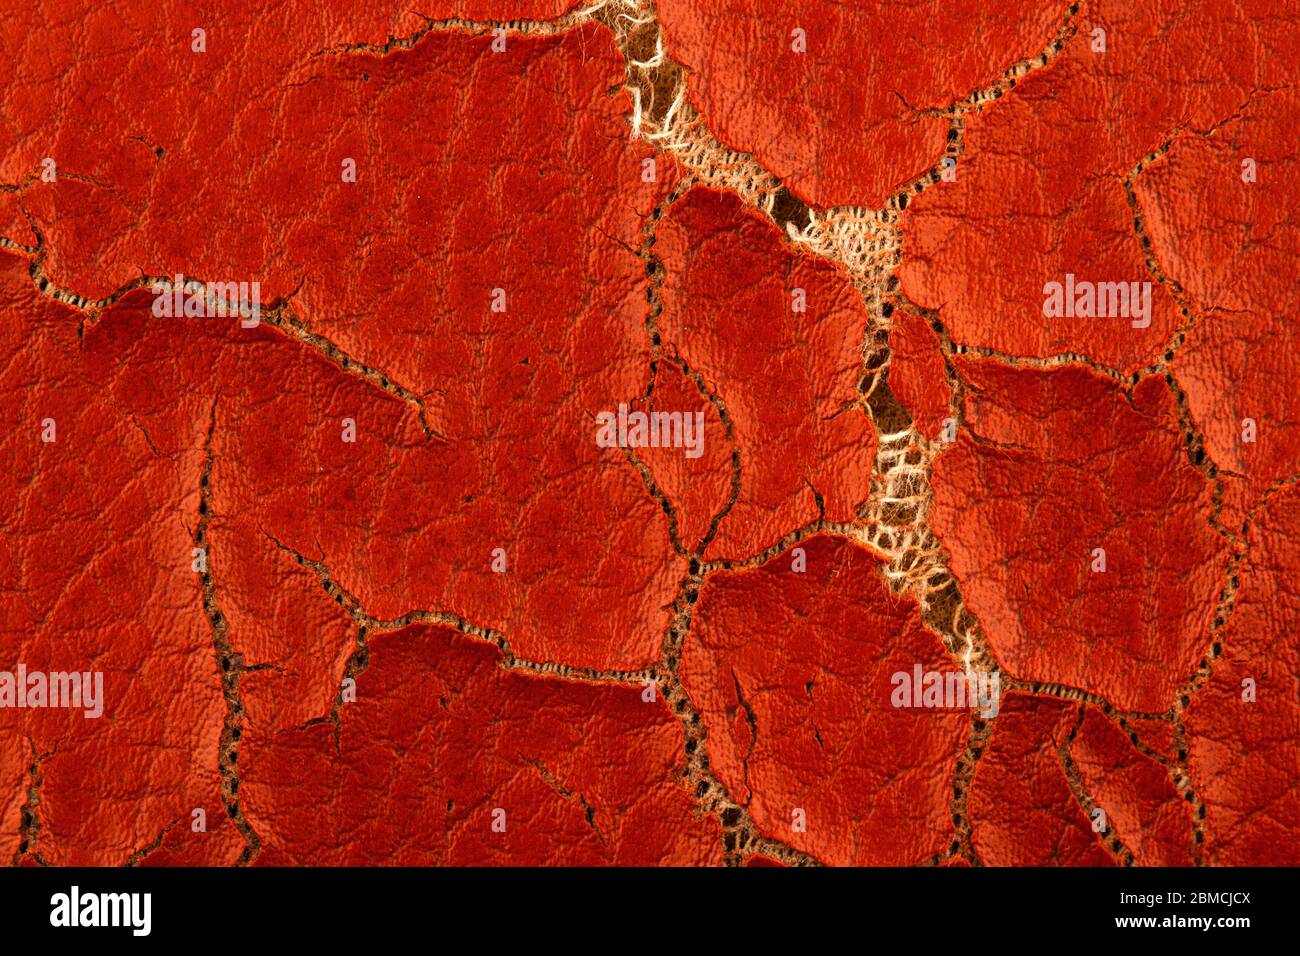 Makro Nahaufnahme Detail von schwer braun rissig Kunstleder Material  Hintergrund Textur mit Schwamm sichtbar darunter Stockfotografie - Alamy